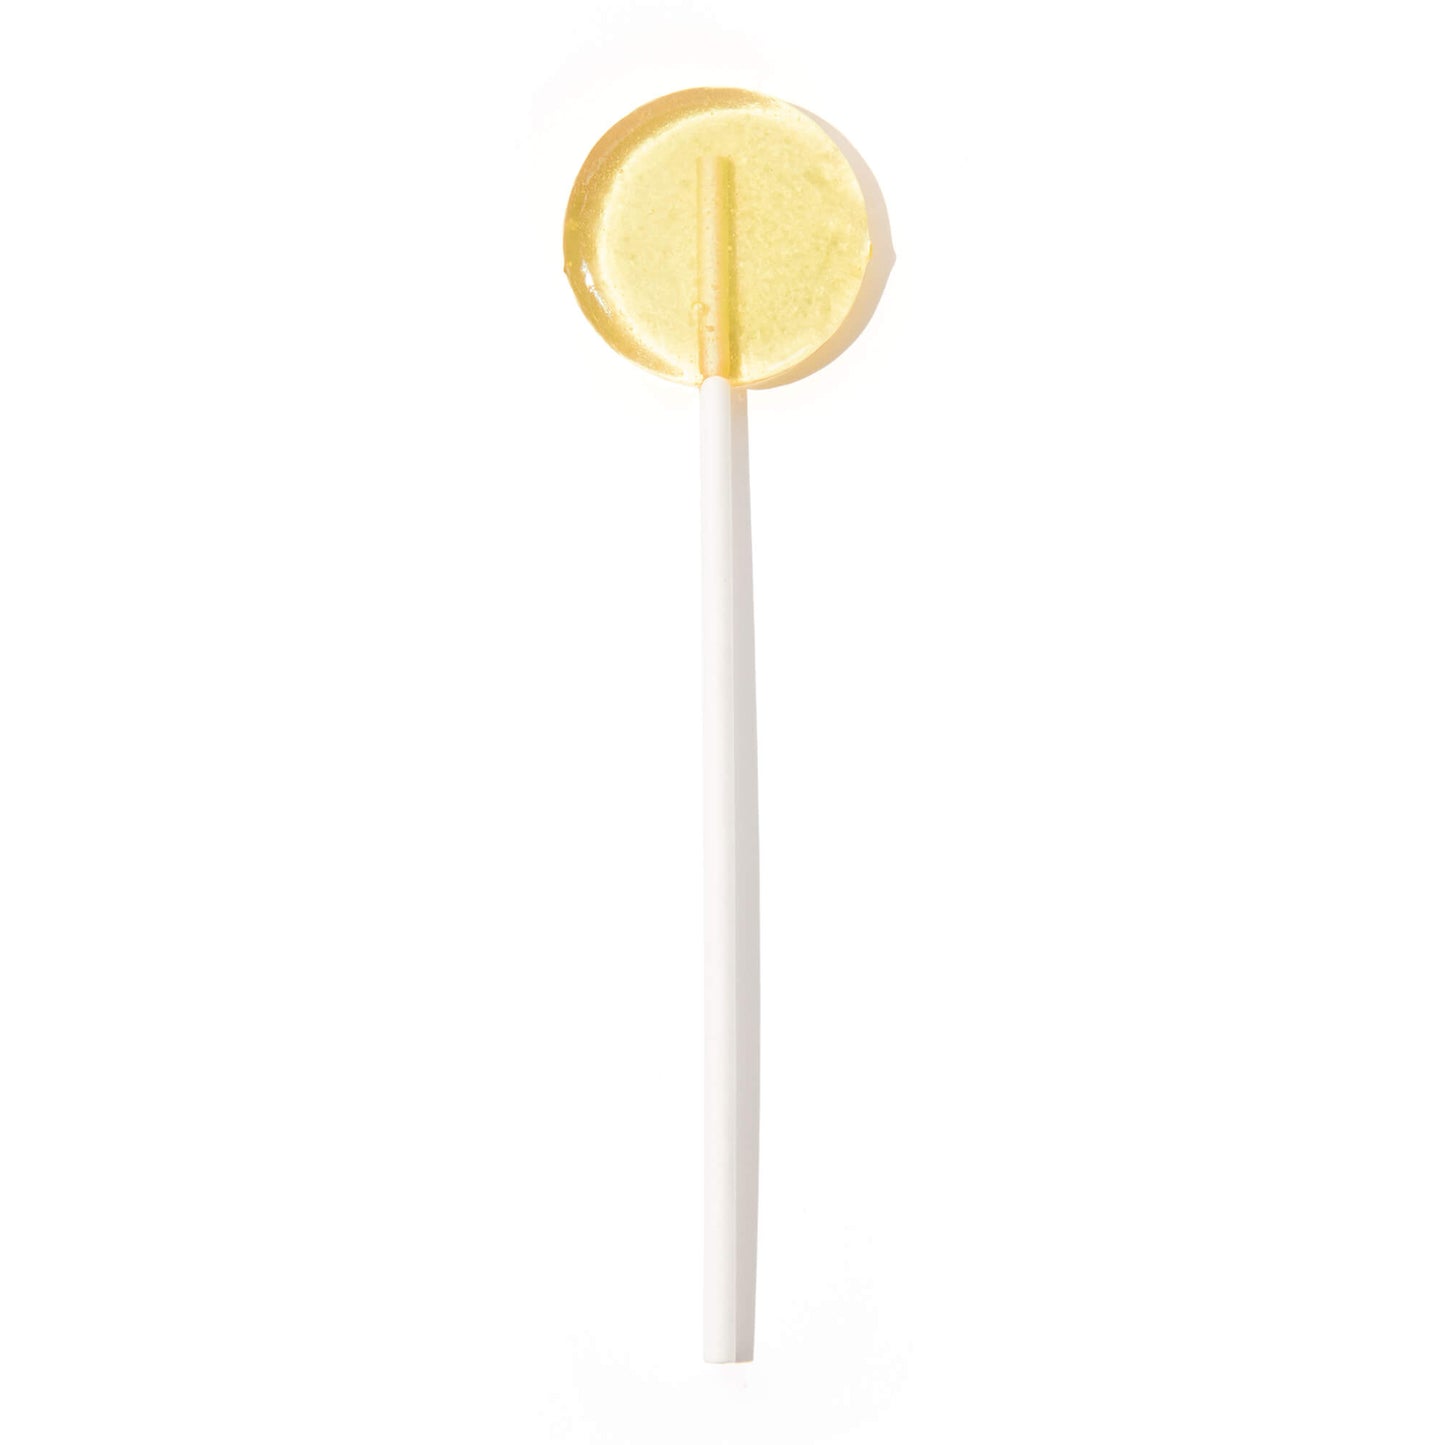 Motion Sickness & Nausea Lollipops